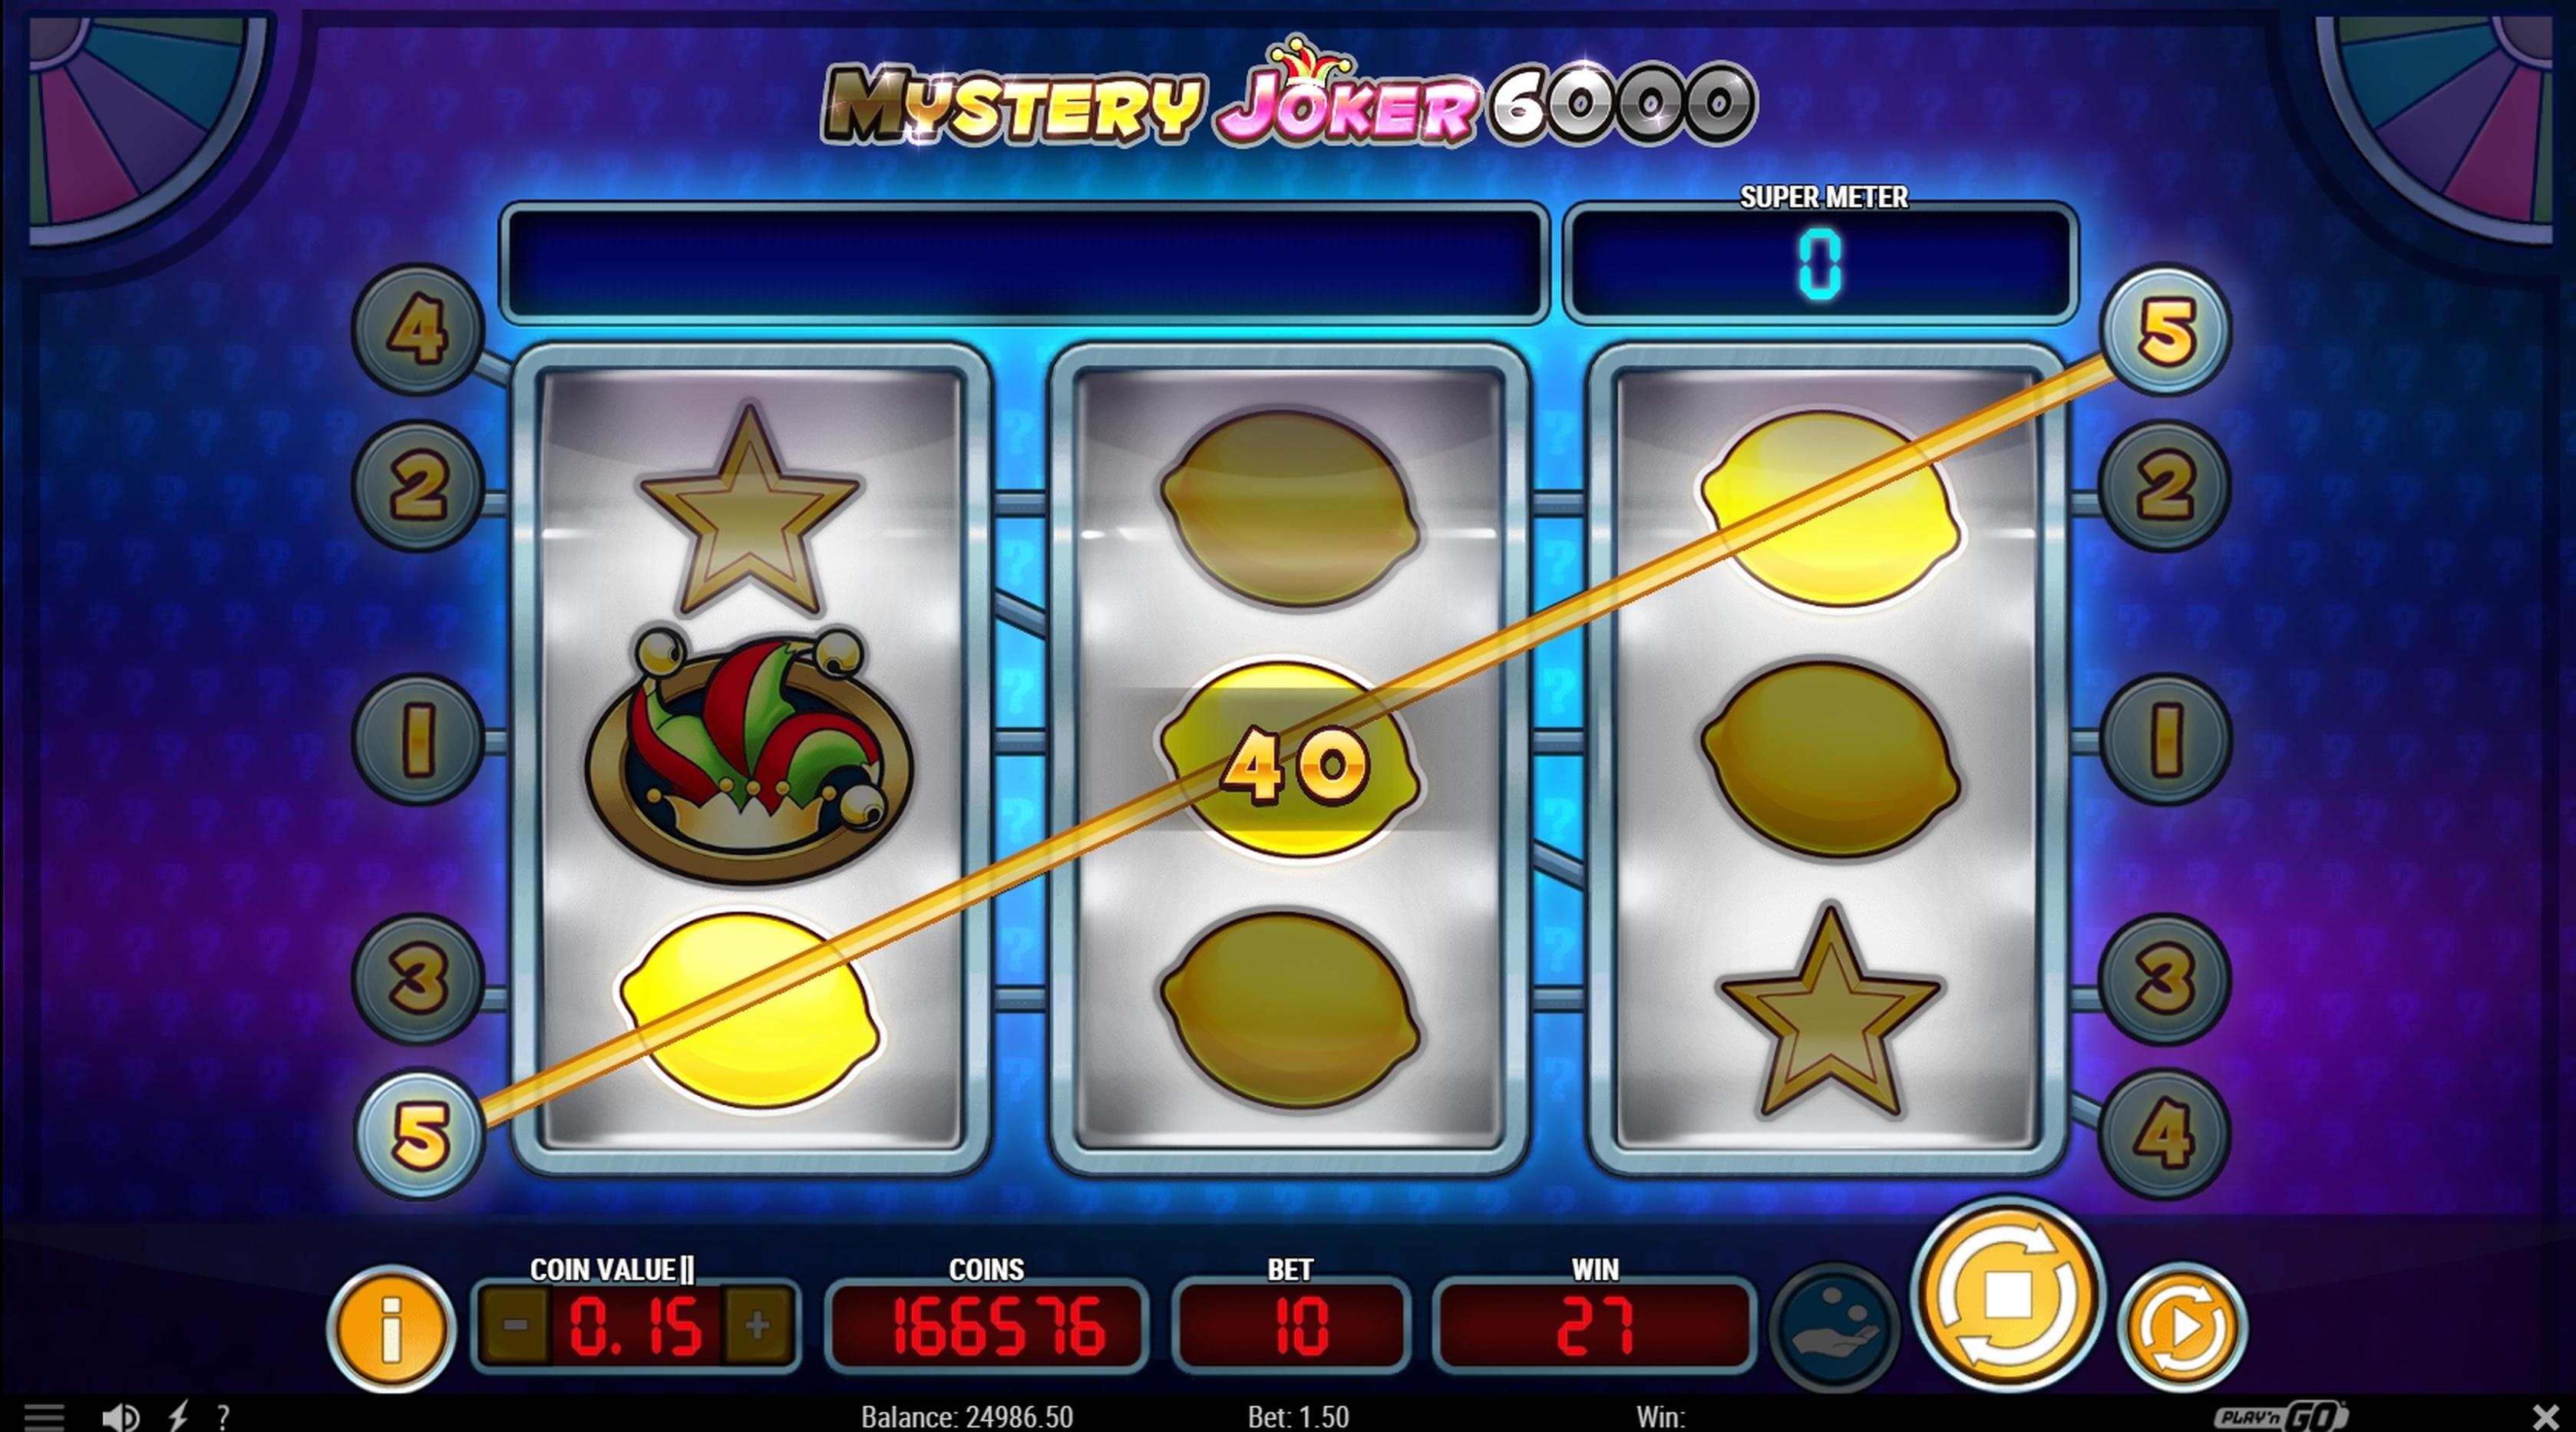 Win Money in Mystery Joker 6000 Free Slot Game by Playn GO